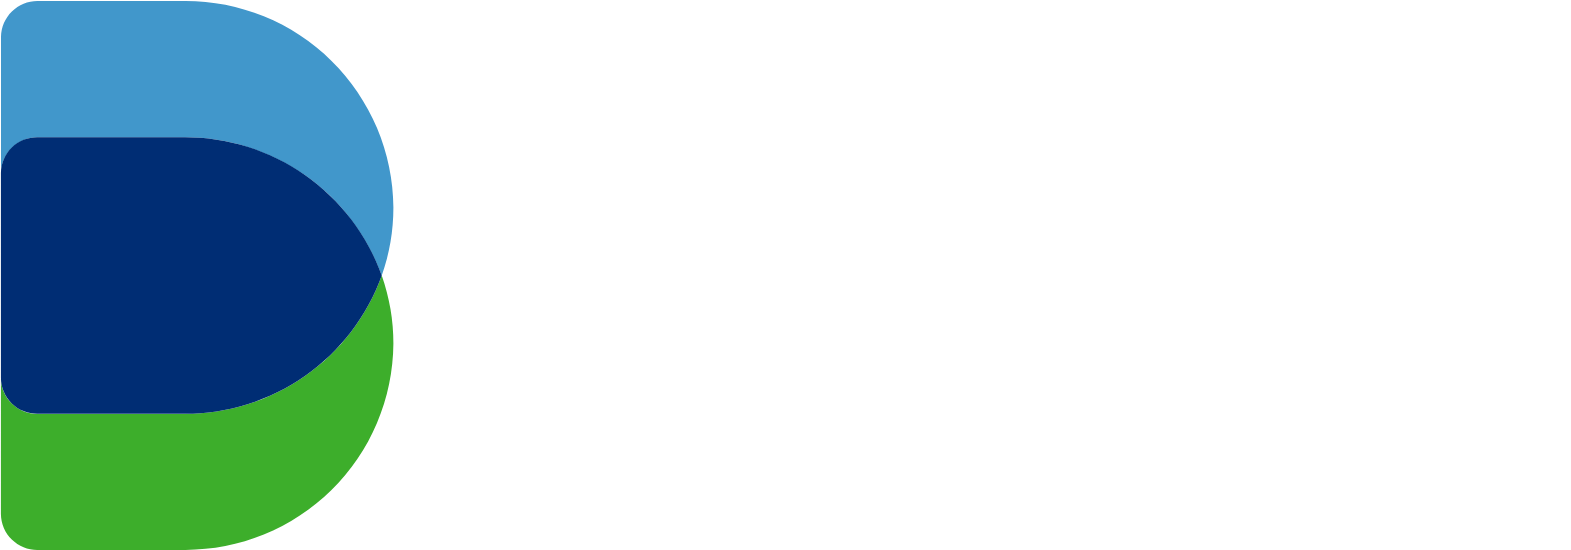 Dukhan Bank logo grand pour les fonds sombres (PNG transparent)